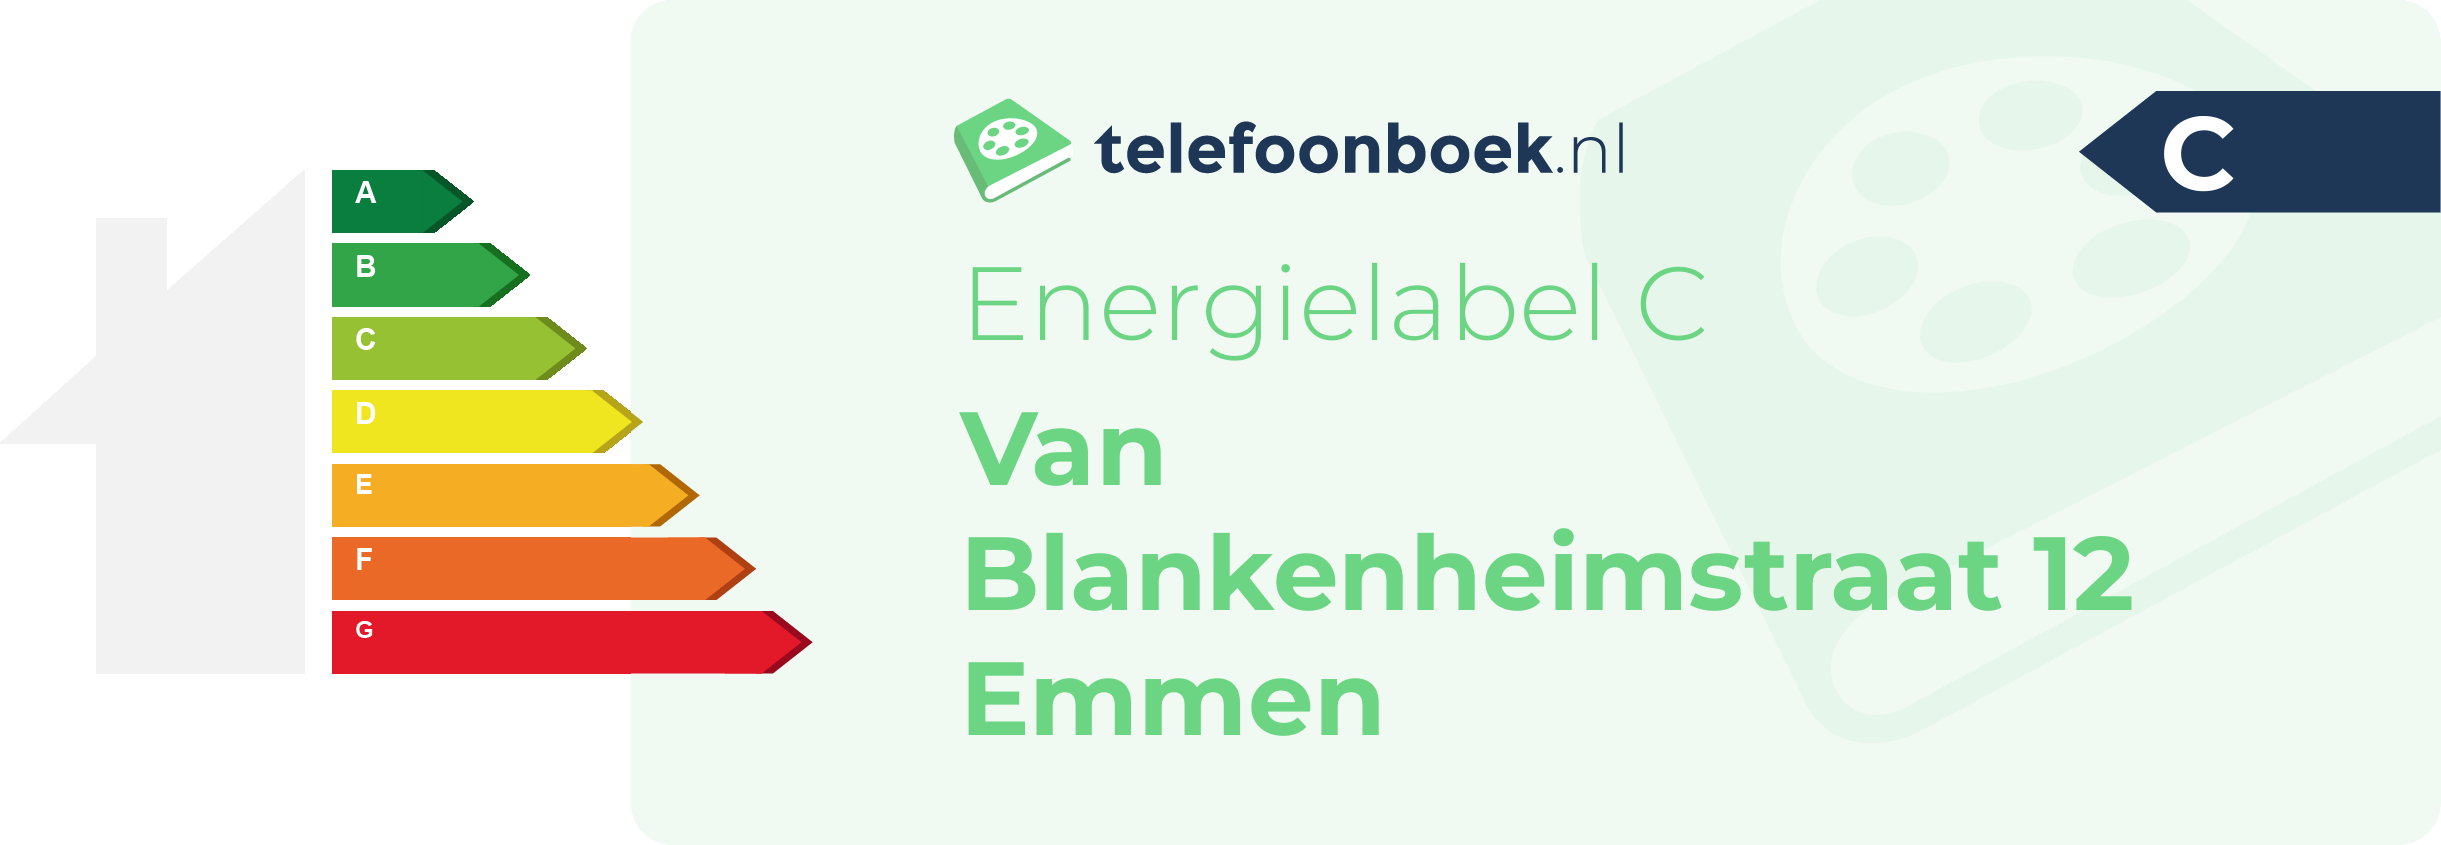 Energielabel Van Blankenheimstraat 12 Emmen